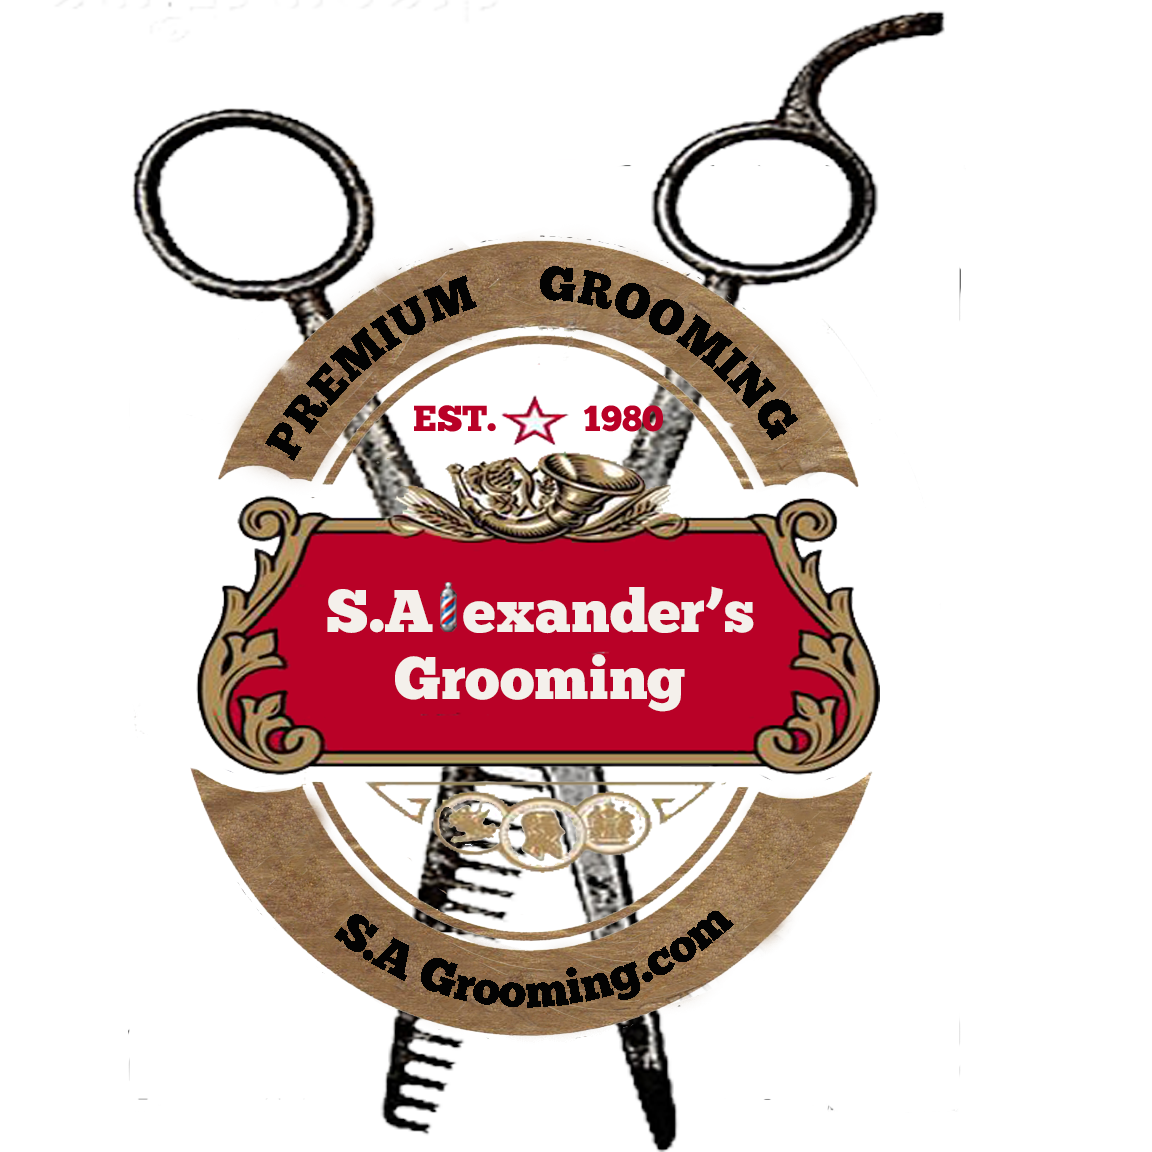 SA Grooming